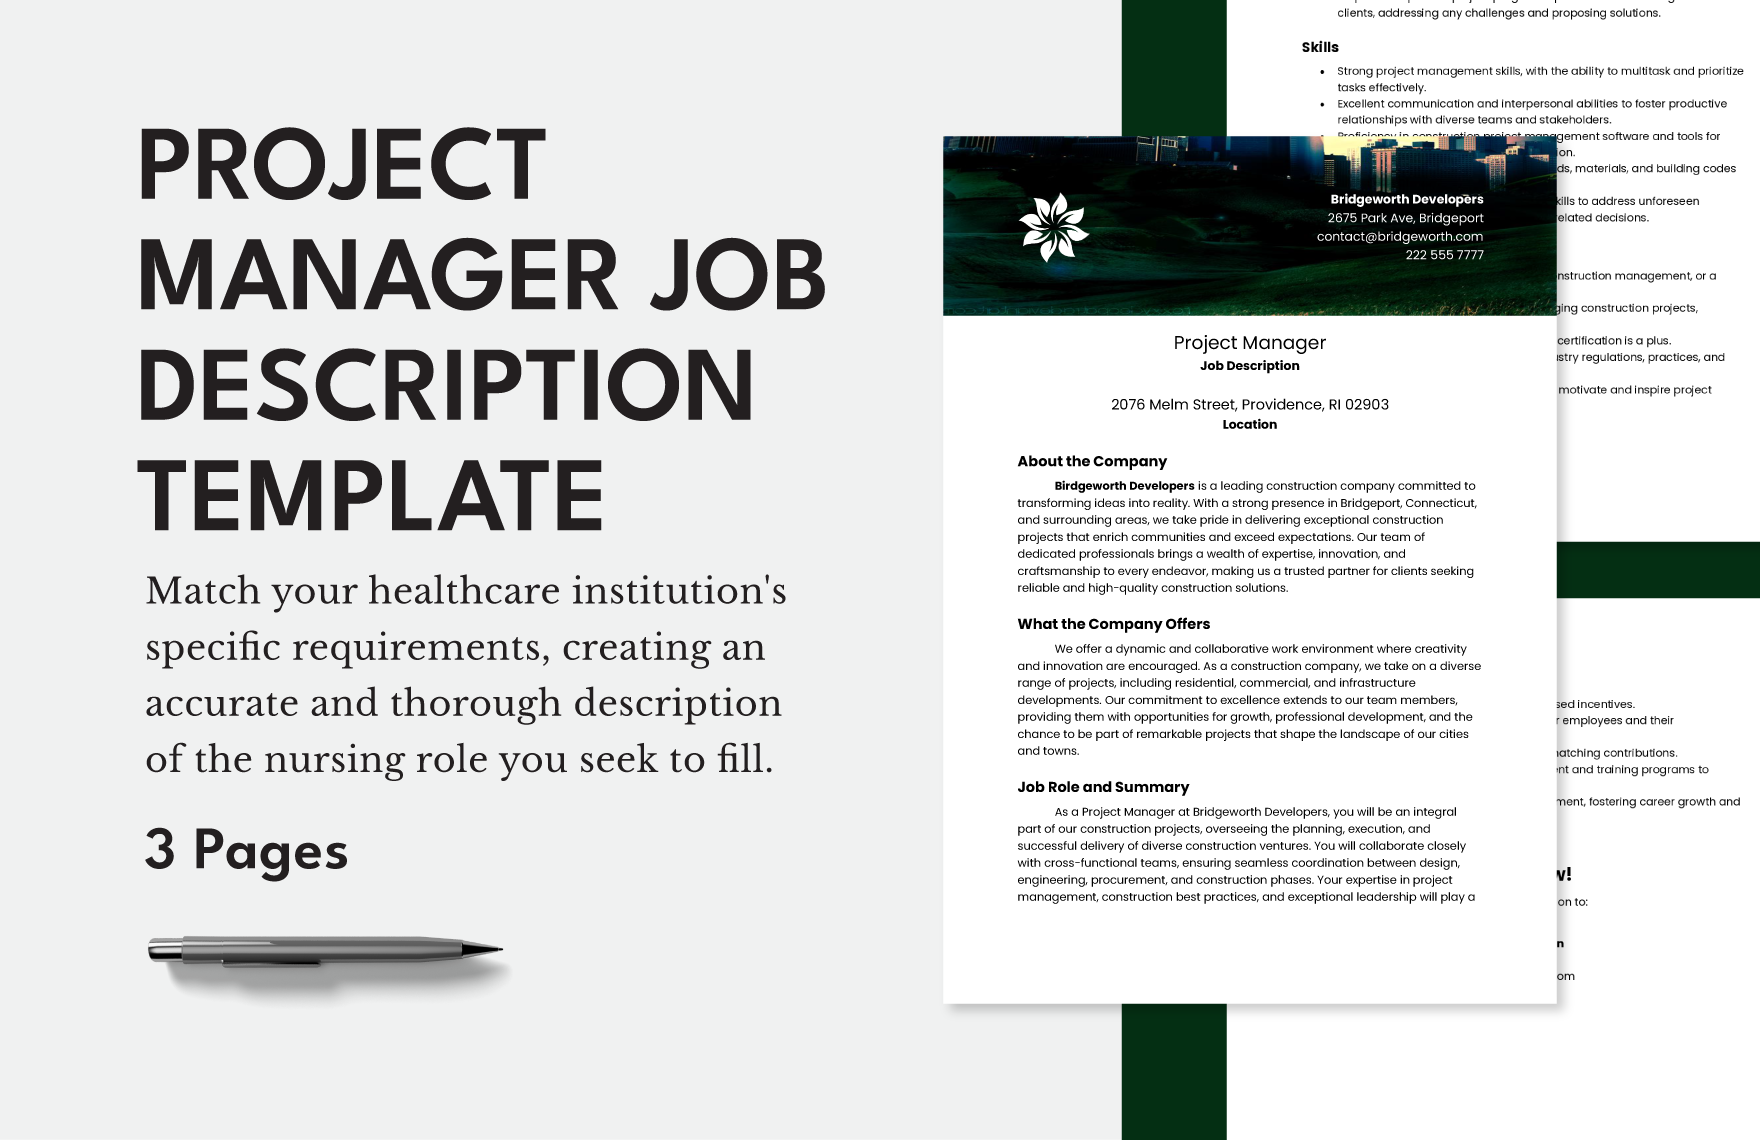 Project Manager Job Description Template